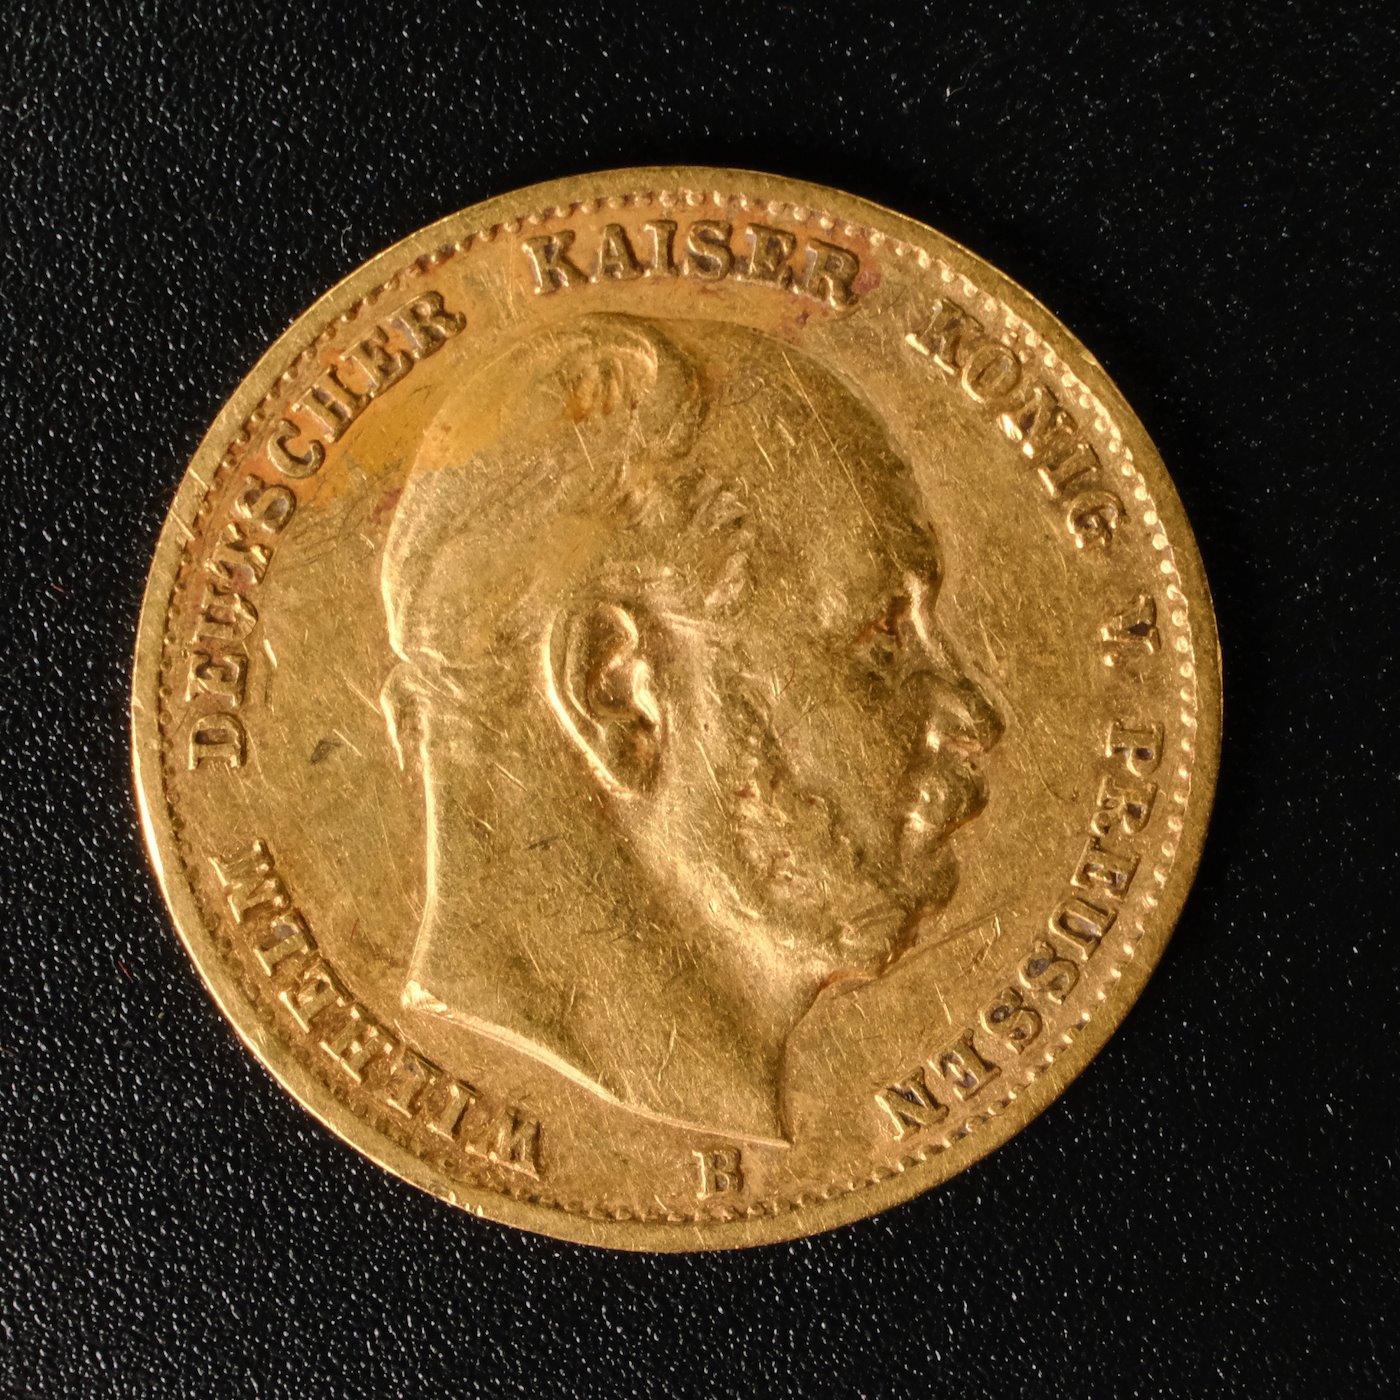 Mince - Zlatá 10 Marka 1888 A císař Fridrich III., Zlato 900/1000, hmotnost hrubá 3,982g